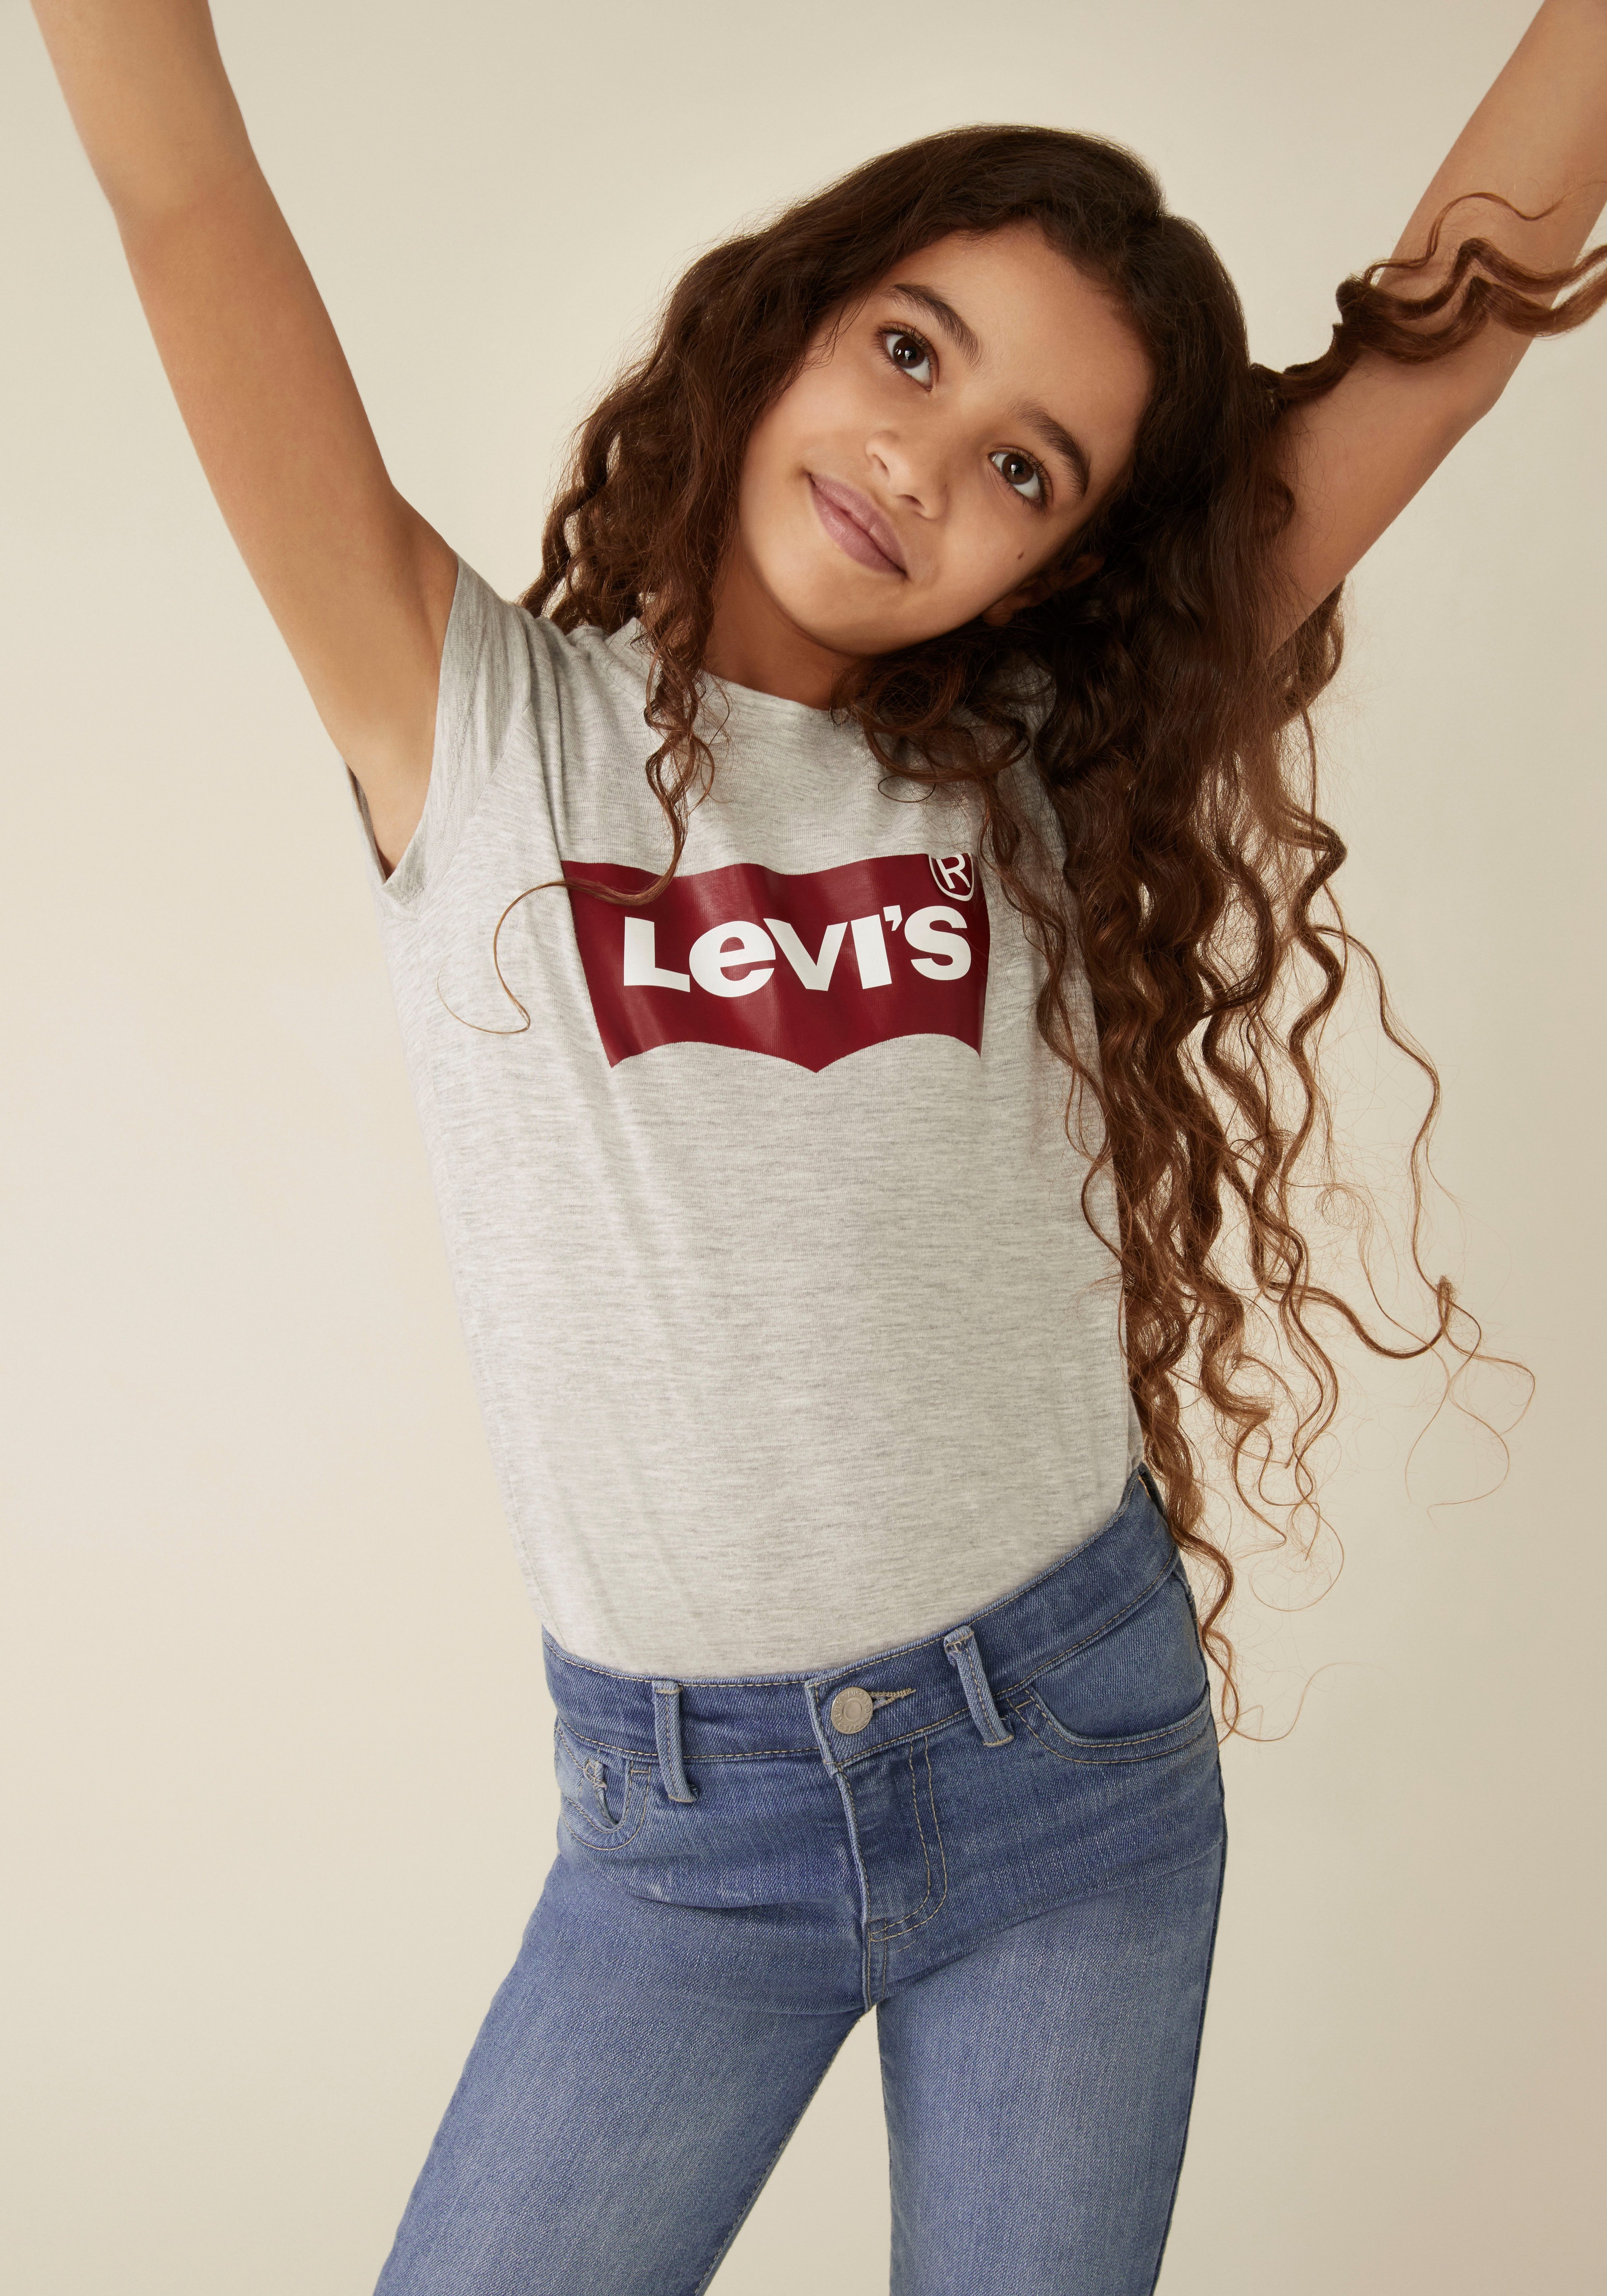 hellgrau-meliert for GIRLS Levi's® TEE BATWING Kids T-Shirt